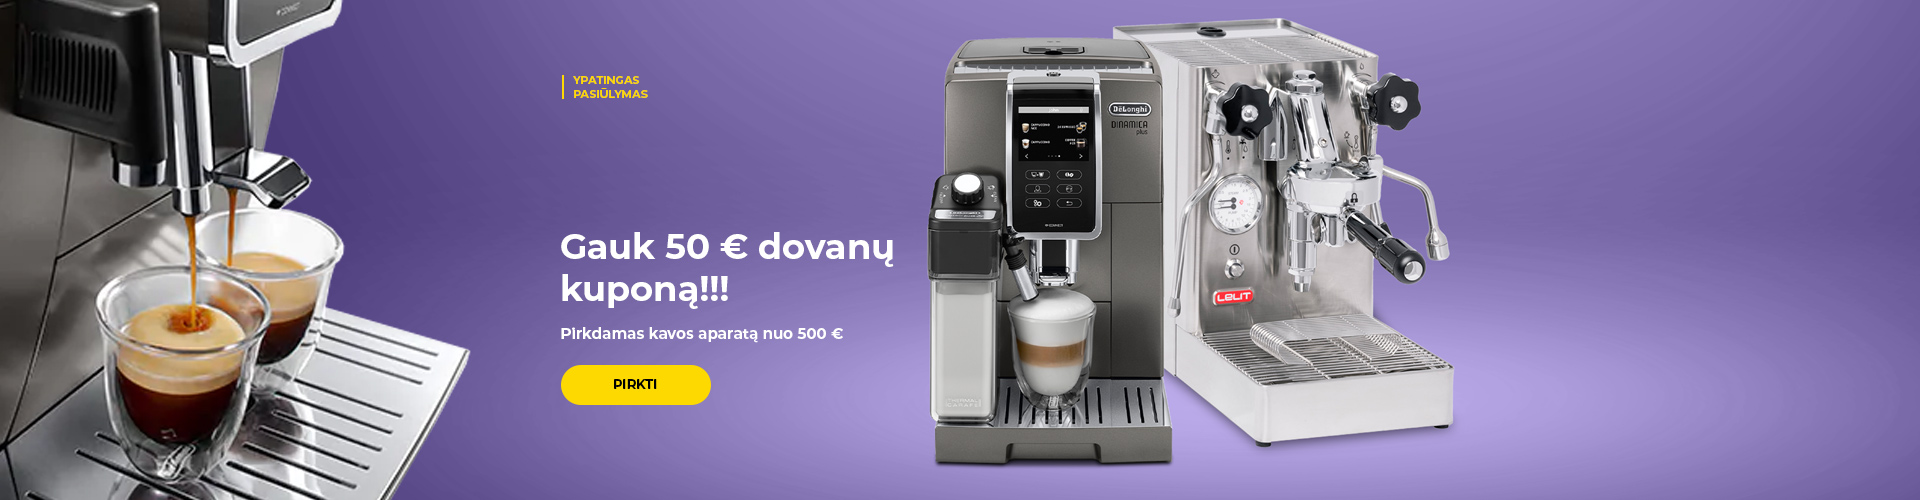 "Gauk 50 € dovanų kuponą!!! Pirkdamas kavos aparatą nuo 500 €."